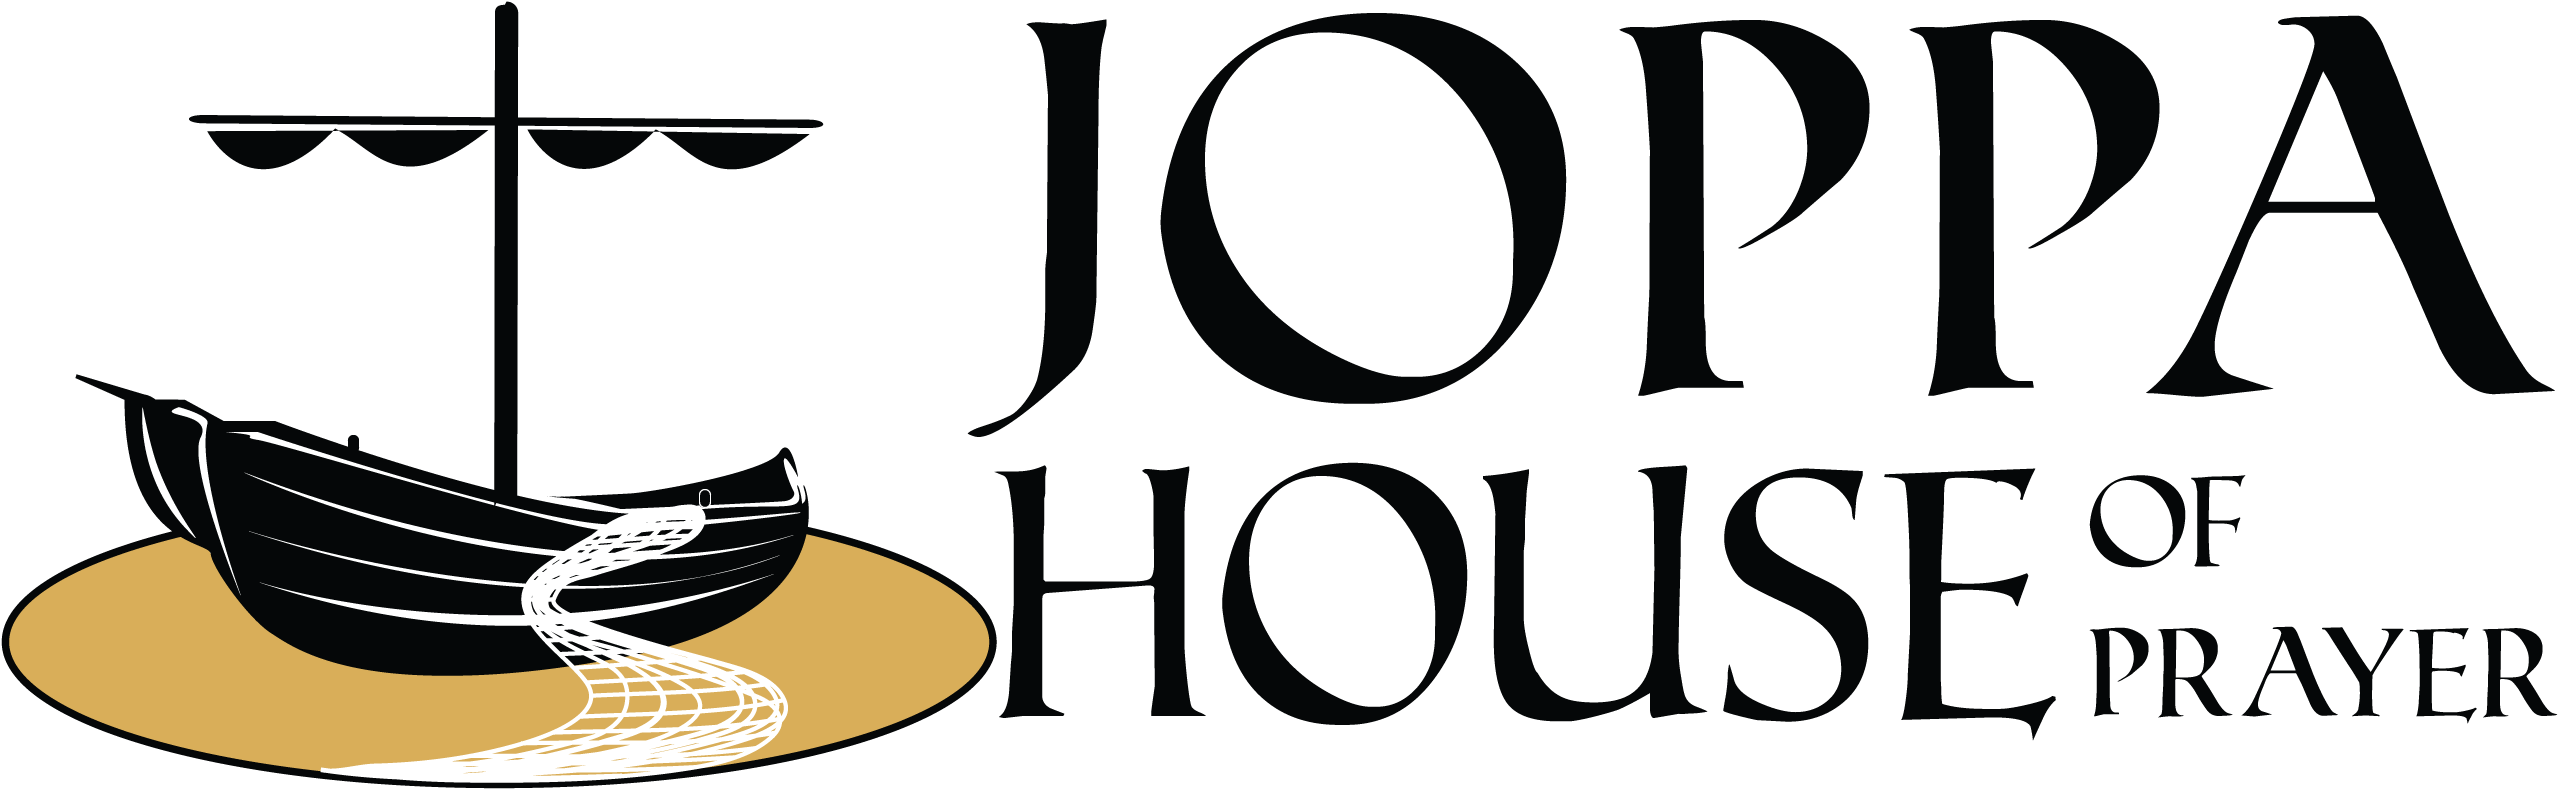 Welcome To Joppa House - Joppa House Of Prayer (2679x1070)